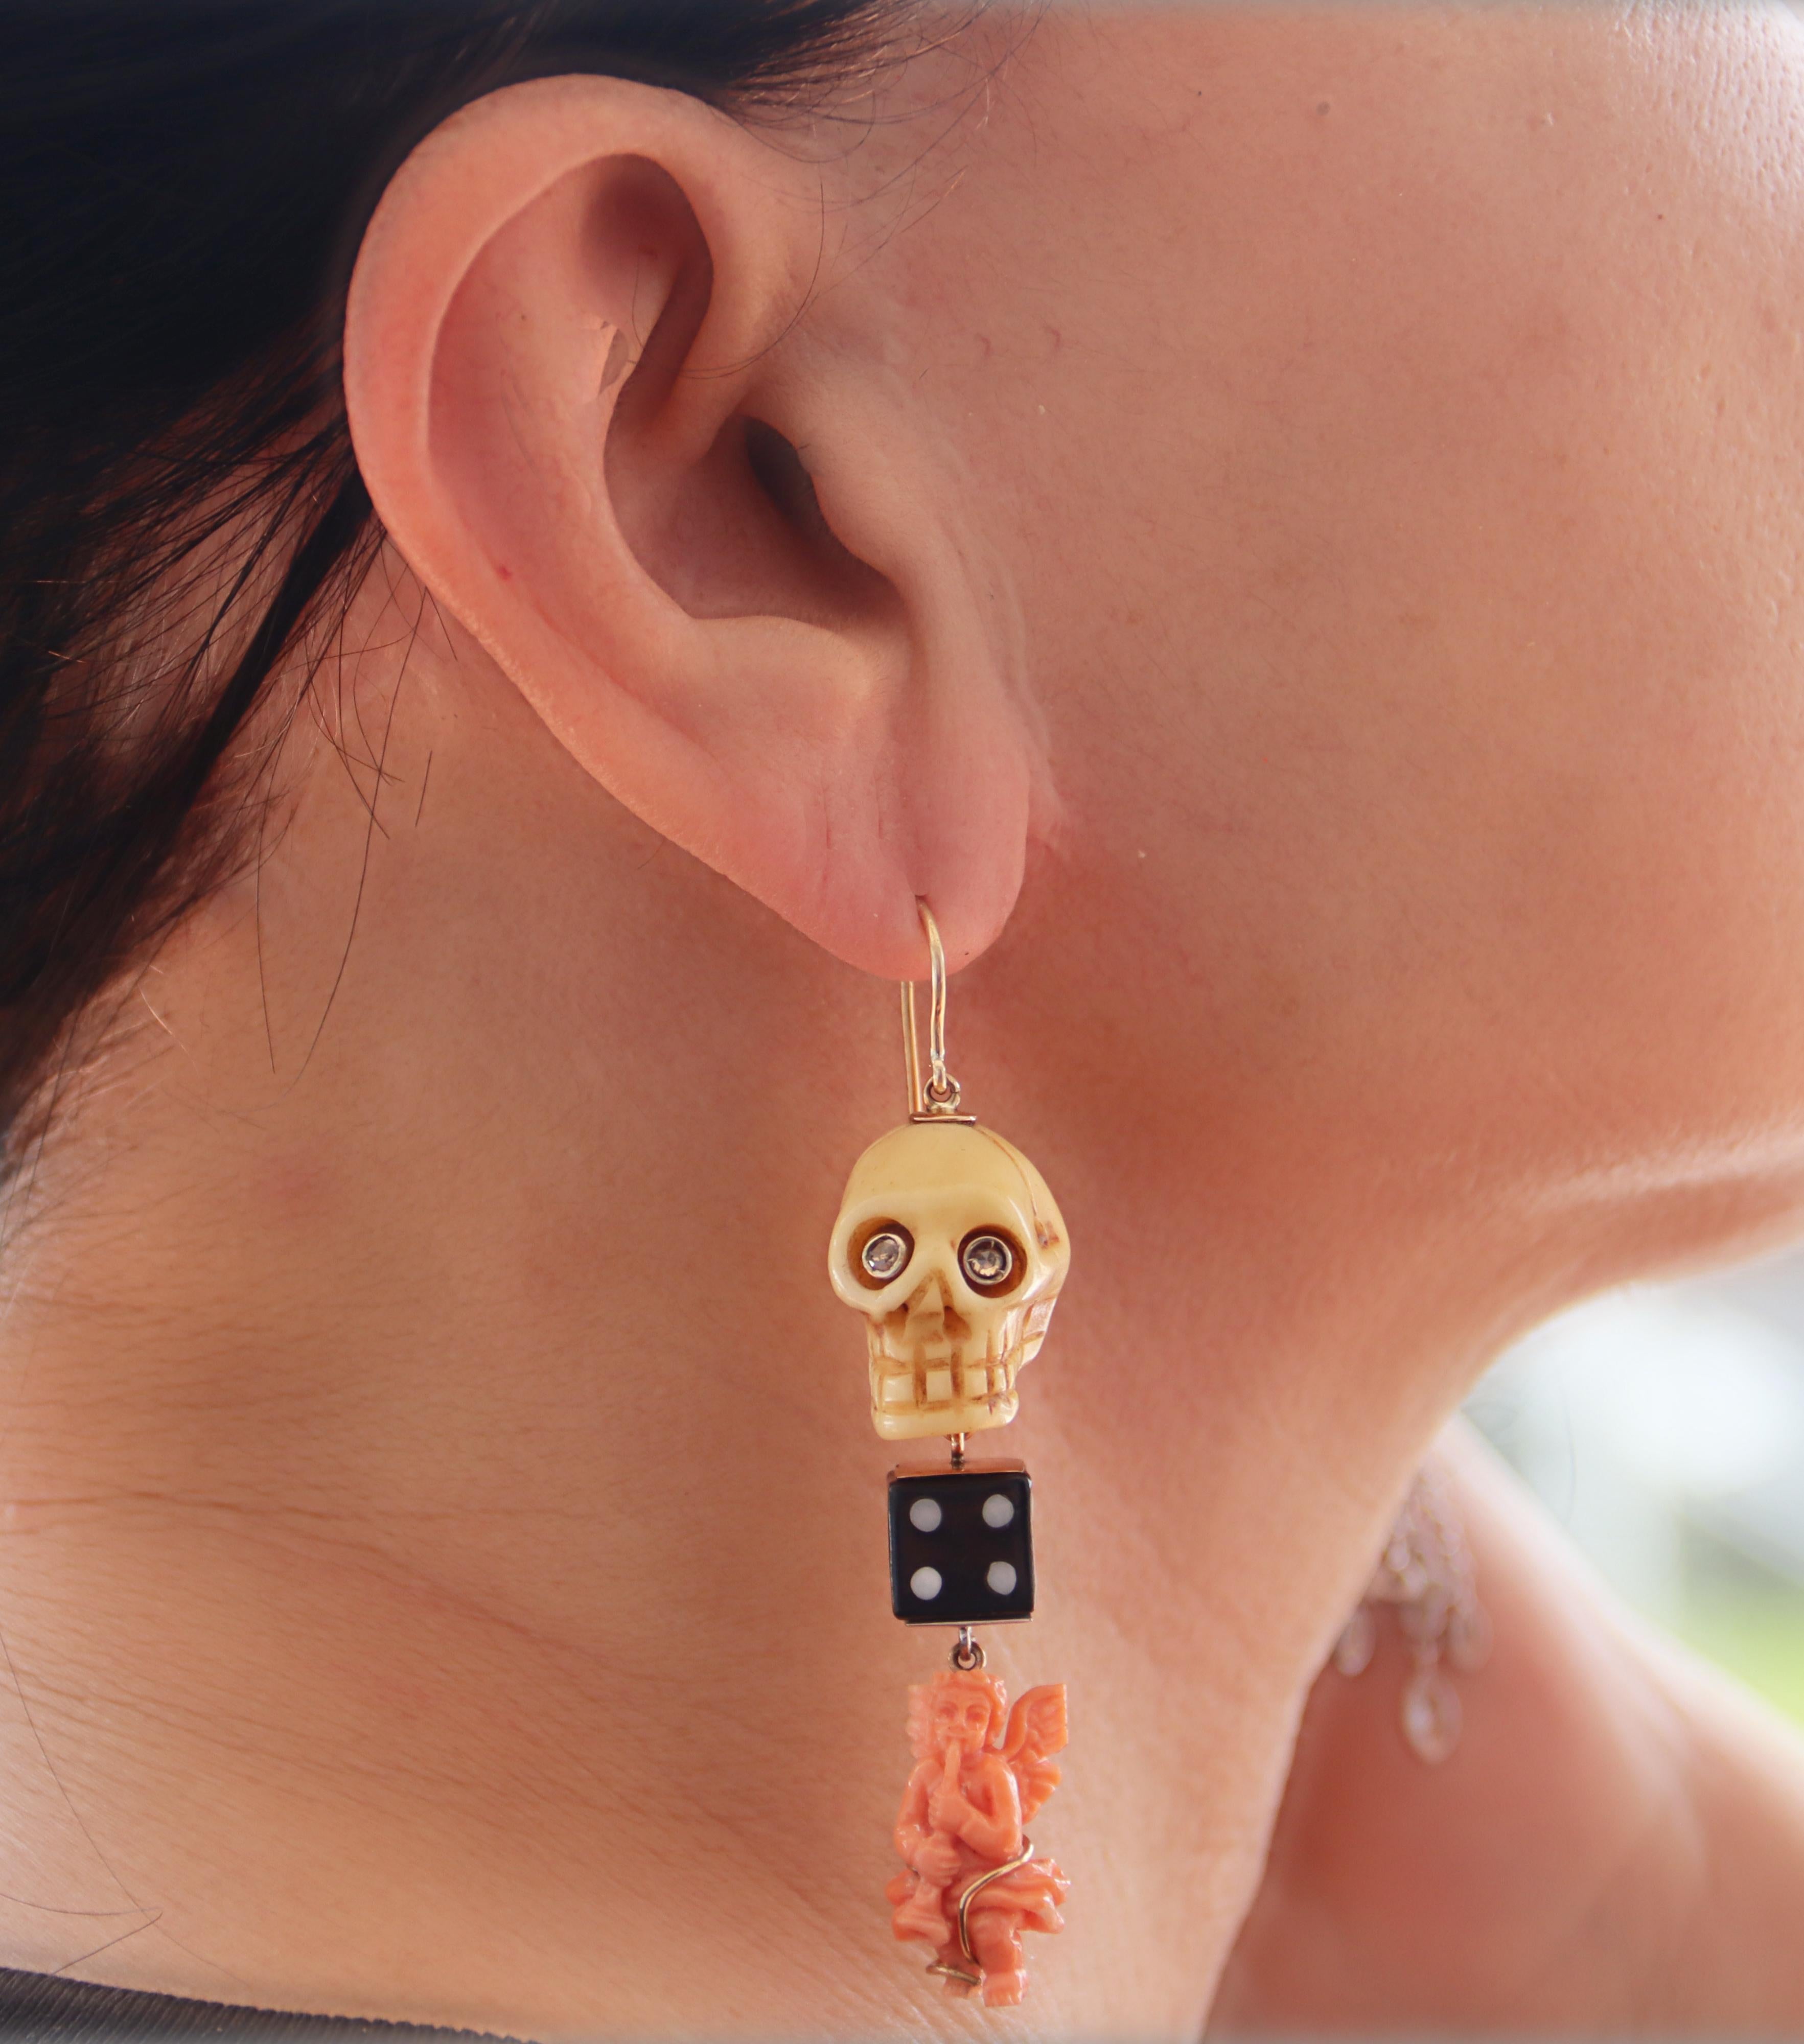 Diese unverwechselbaren Ohrringe vereinen die zeitlose Eleganz von 14-karätigem Gelbgold mit dem einzigartigen Charme von Knochen, Onyx und Koralle. Jeder Ohrring zeigt einen kunstvoll geschnitzten Knochenschädel, dessen raffinierte Schärfe durch